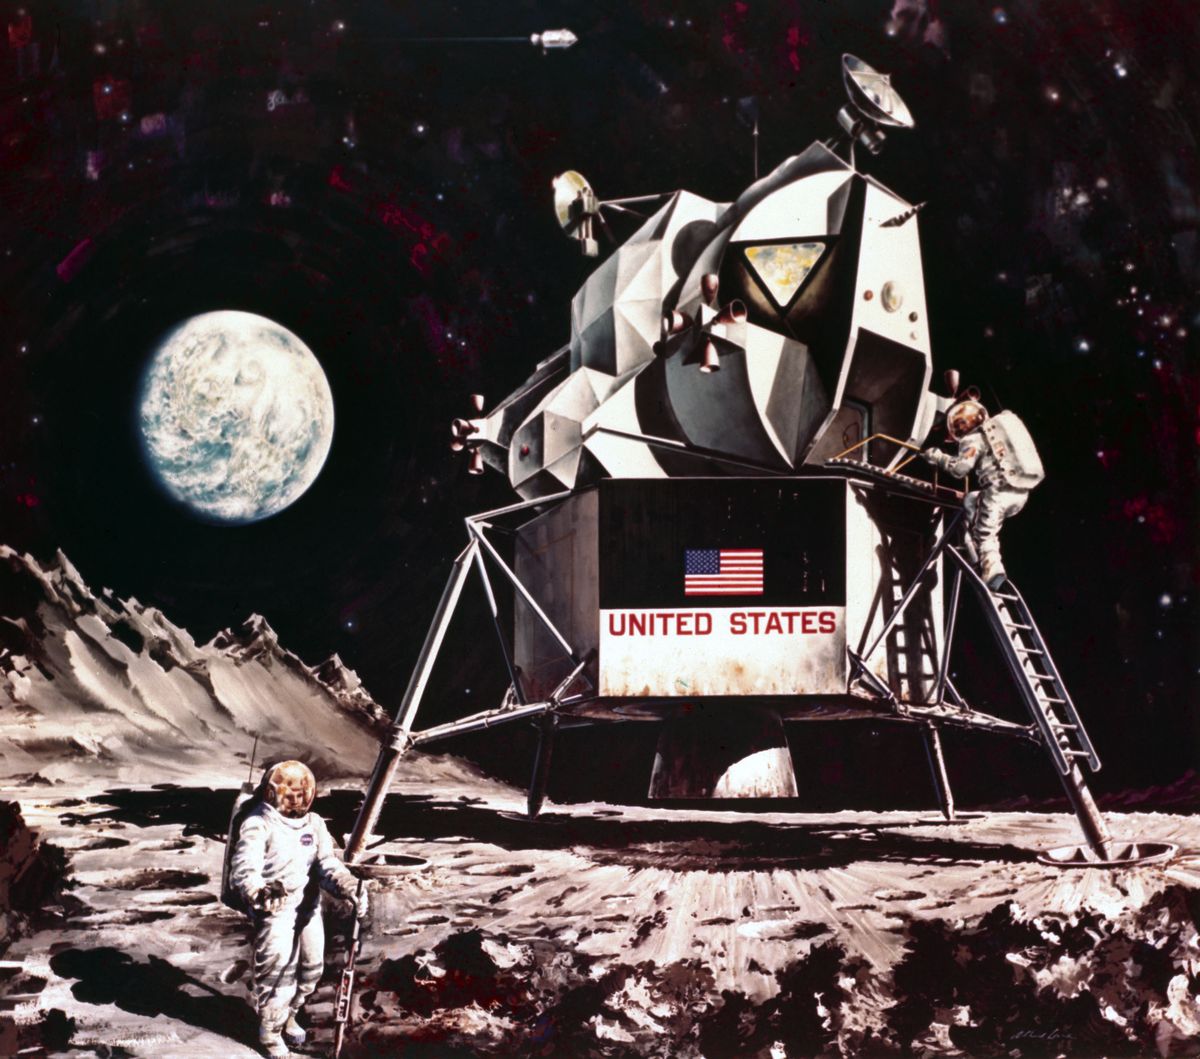 Artist impression of the Apollo Lunar Module, 1968.